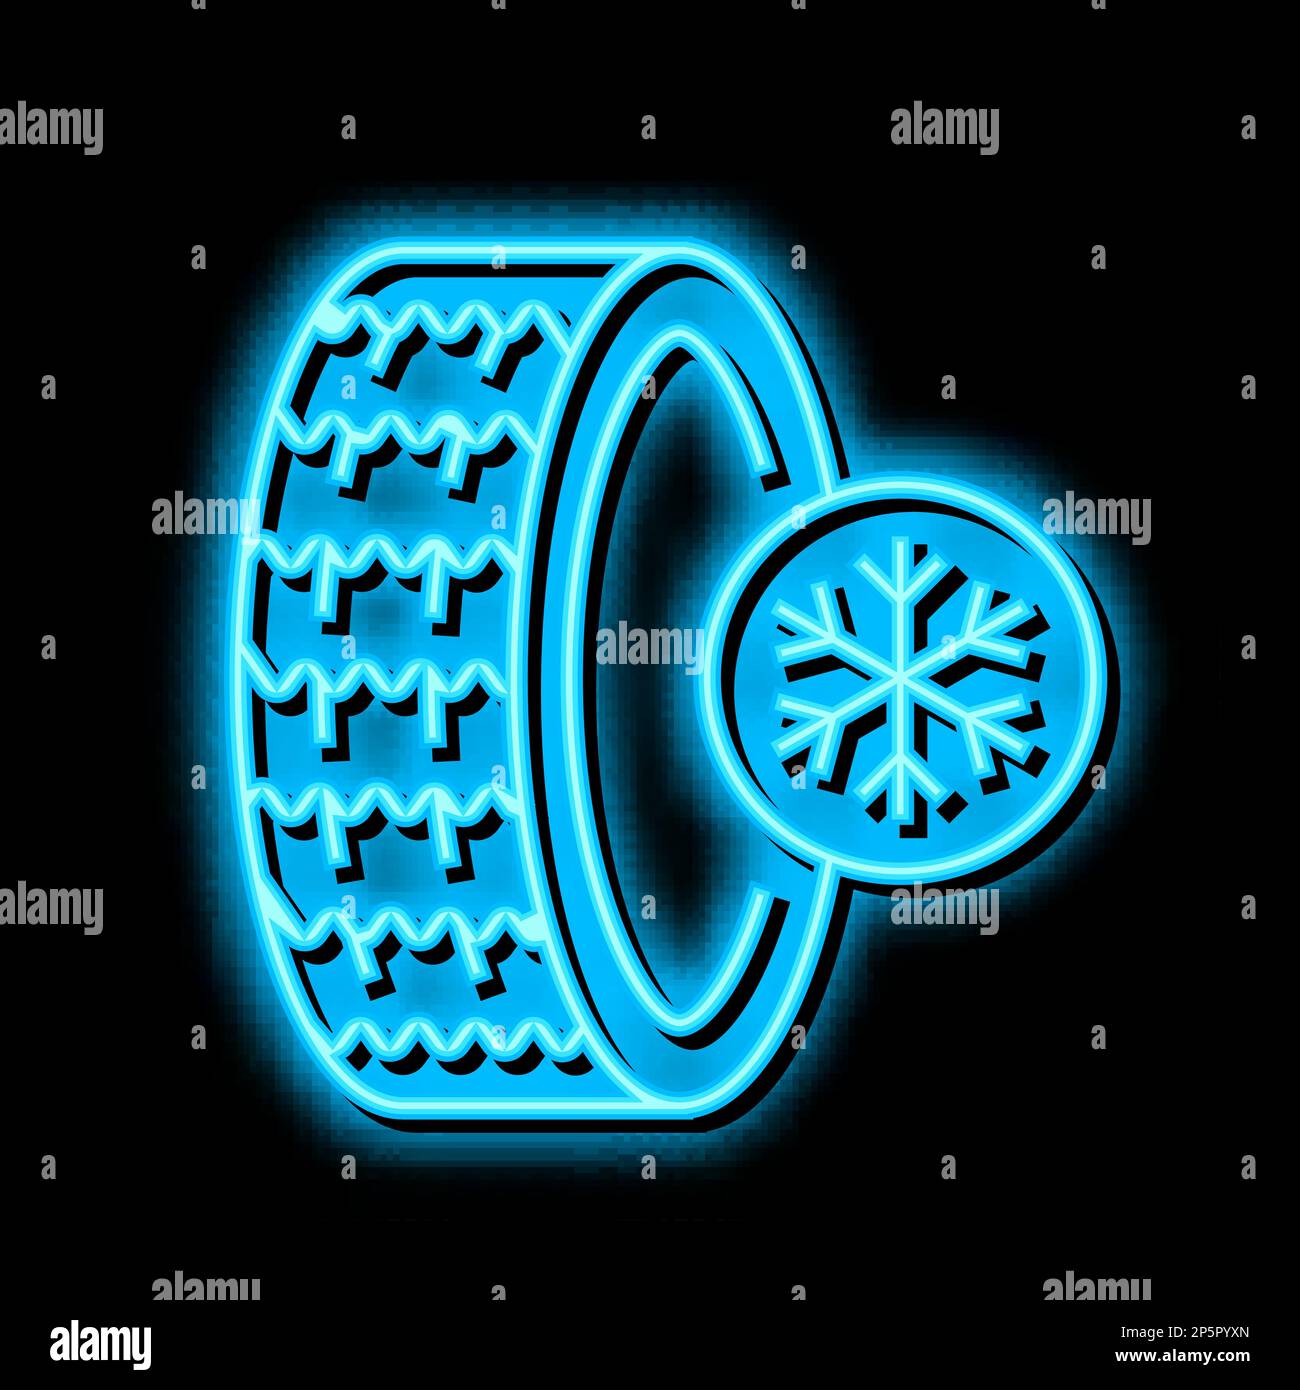 ice winter season tires neon glow icon illustration Stock Vector